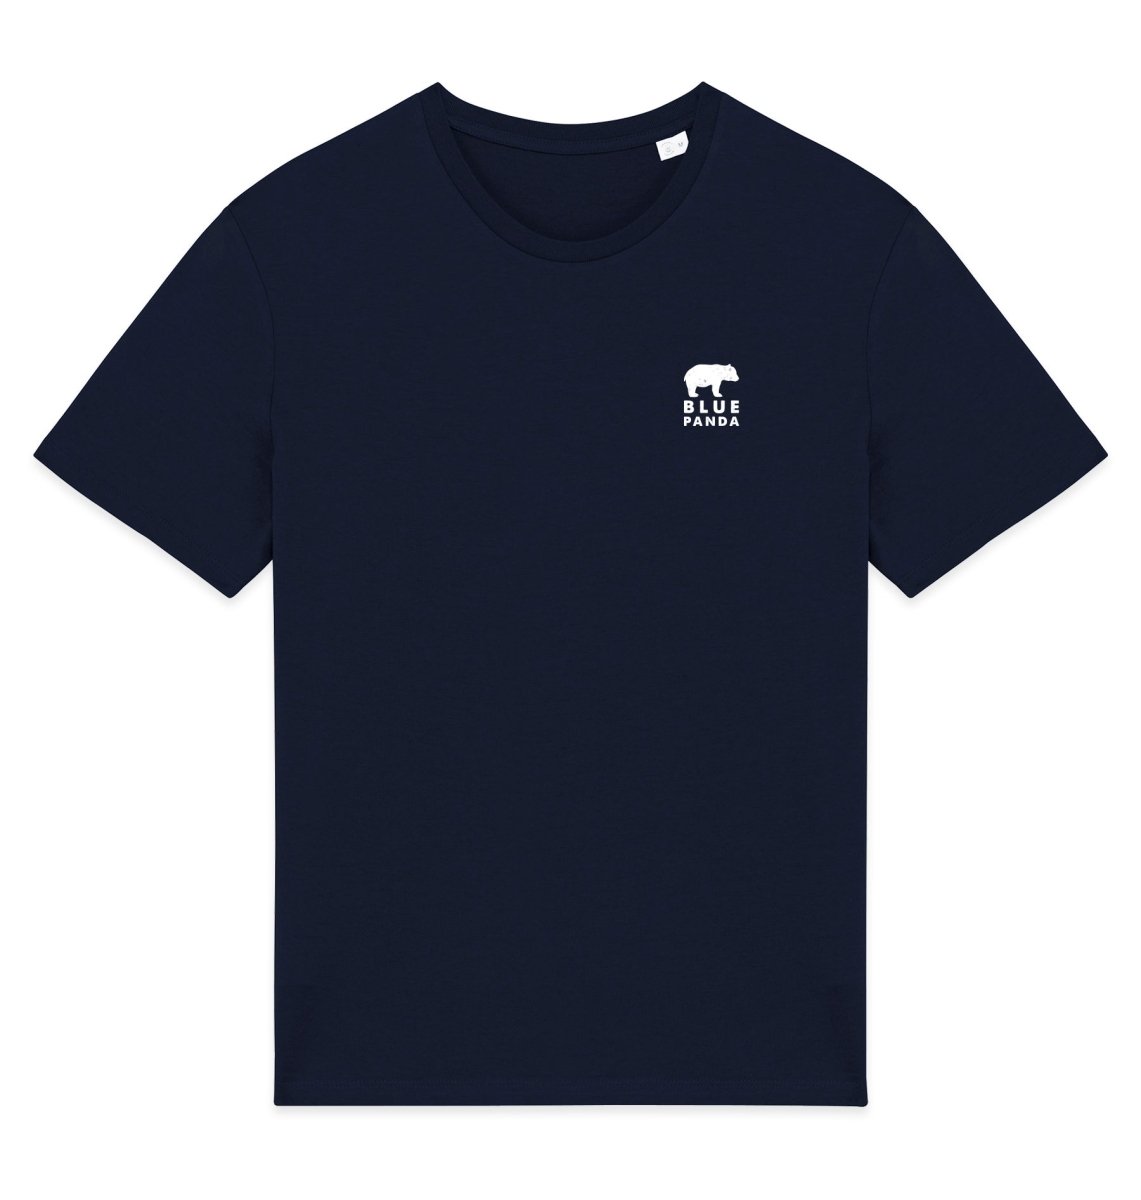 Manta Ray Mens T-shirt - Blue Panda